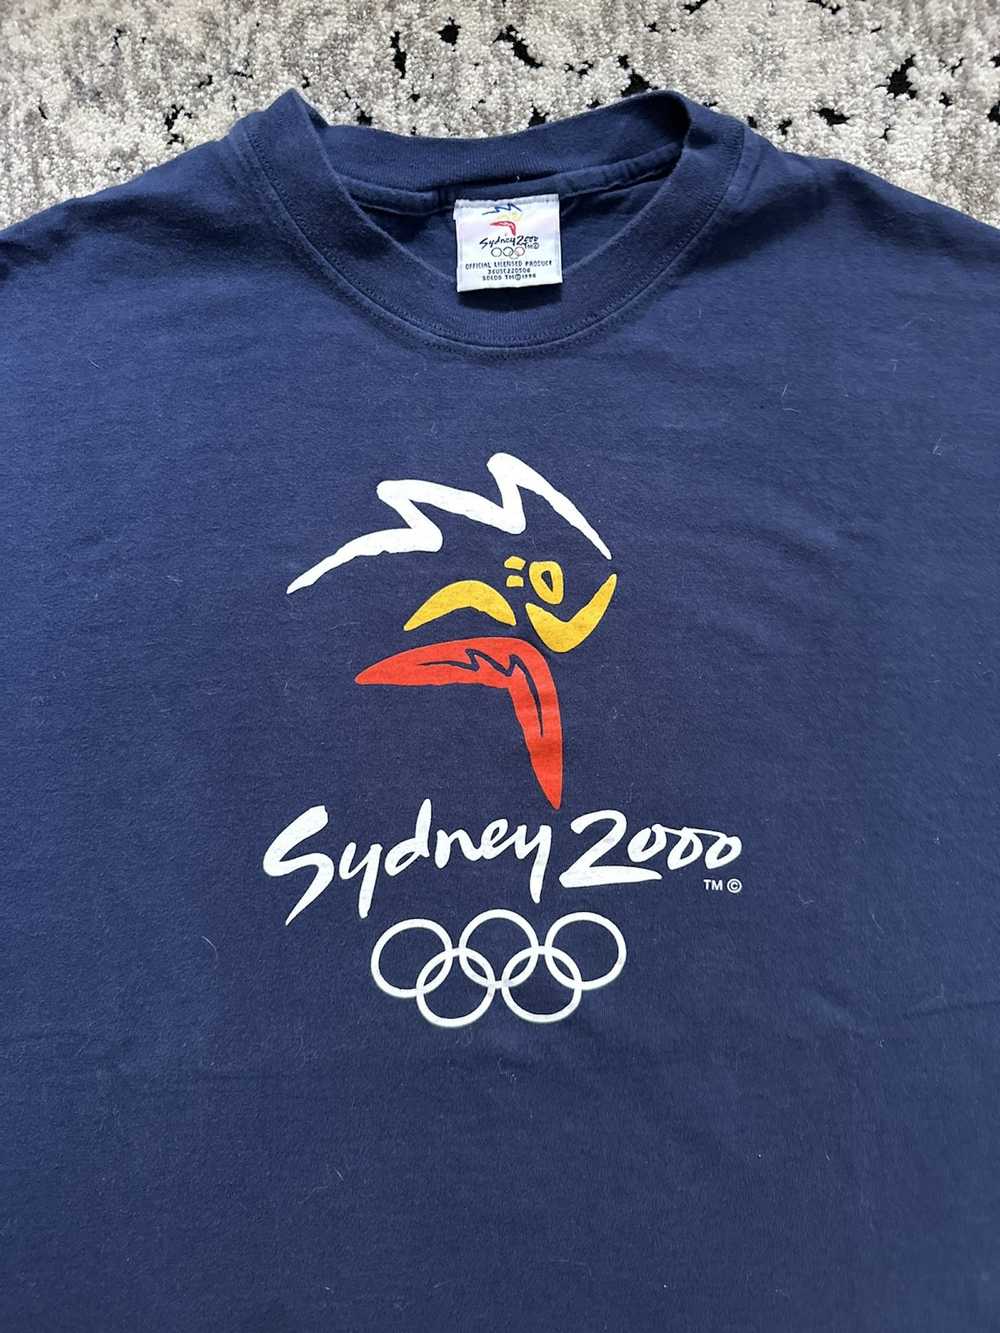 Usa Olympics × Vintage 2000 Sydney Olympics Tee - image 3